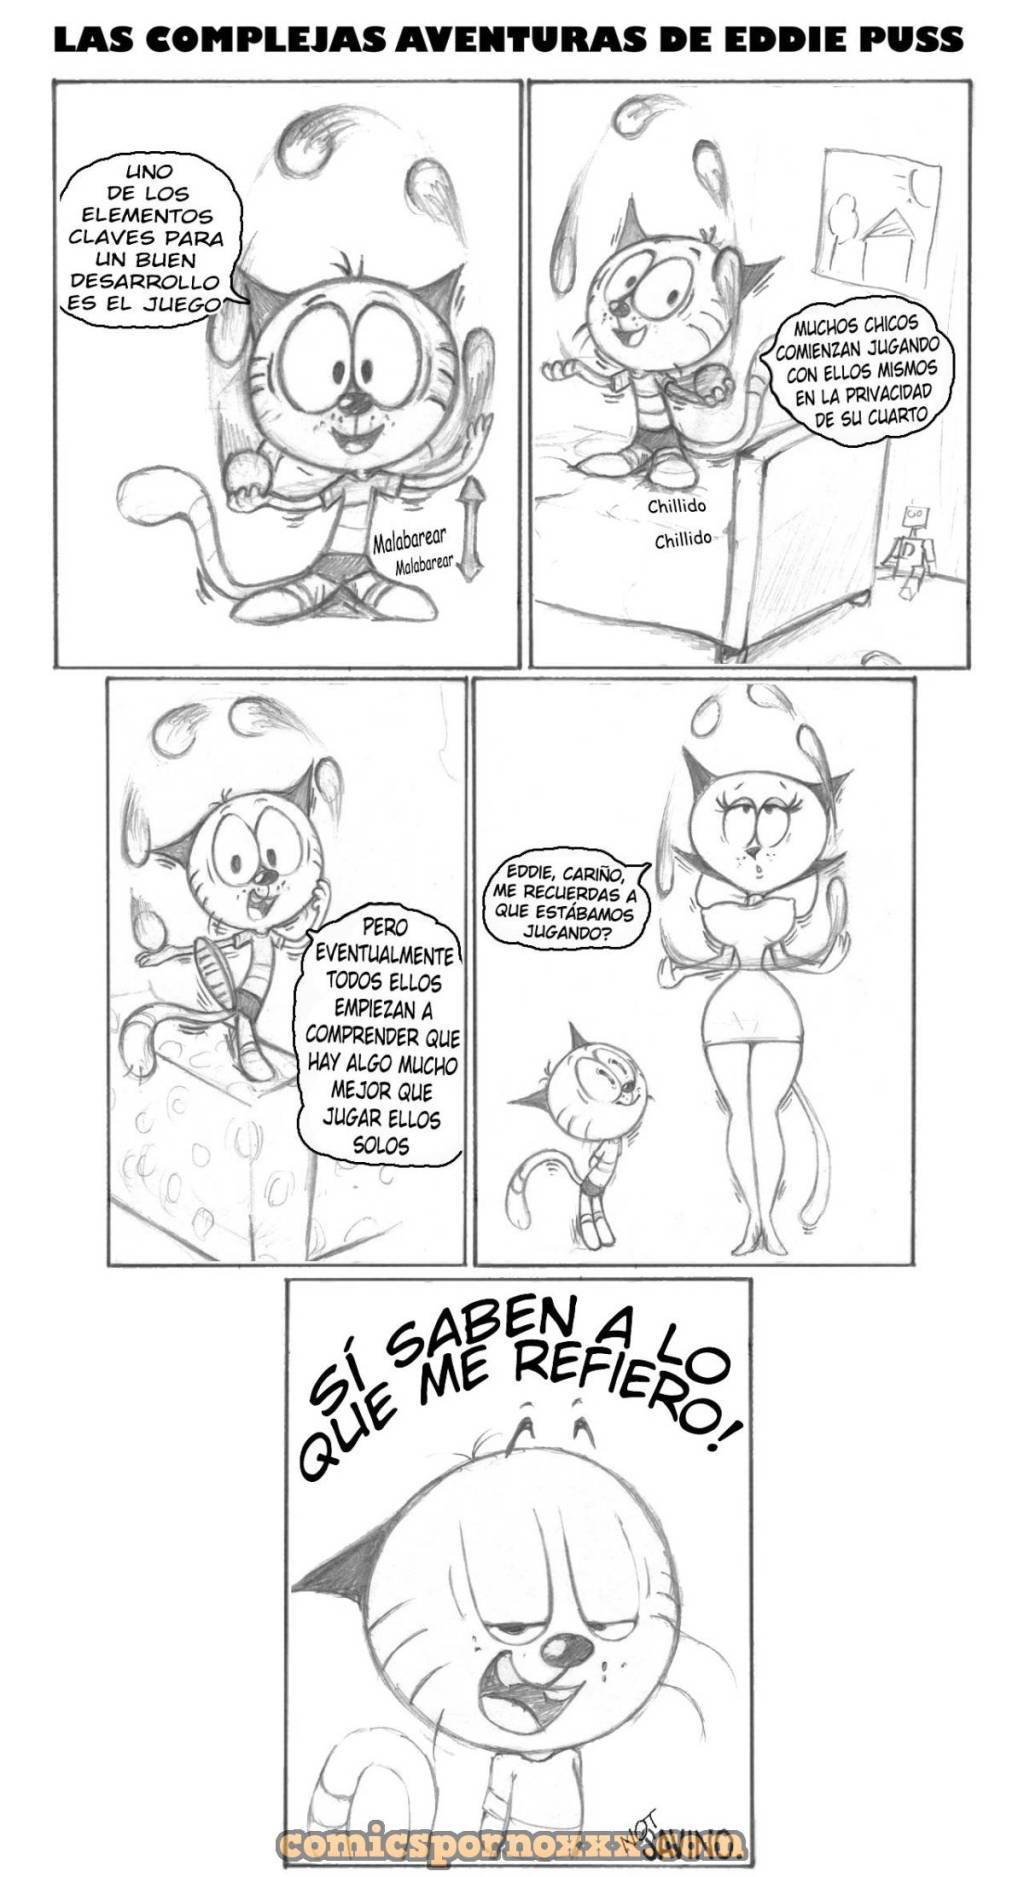 Las Complejas Aventuras de Eddie Puss - 10 - Comics Porno - Hentai Manga - Cartoon XXX